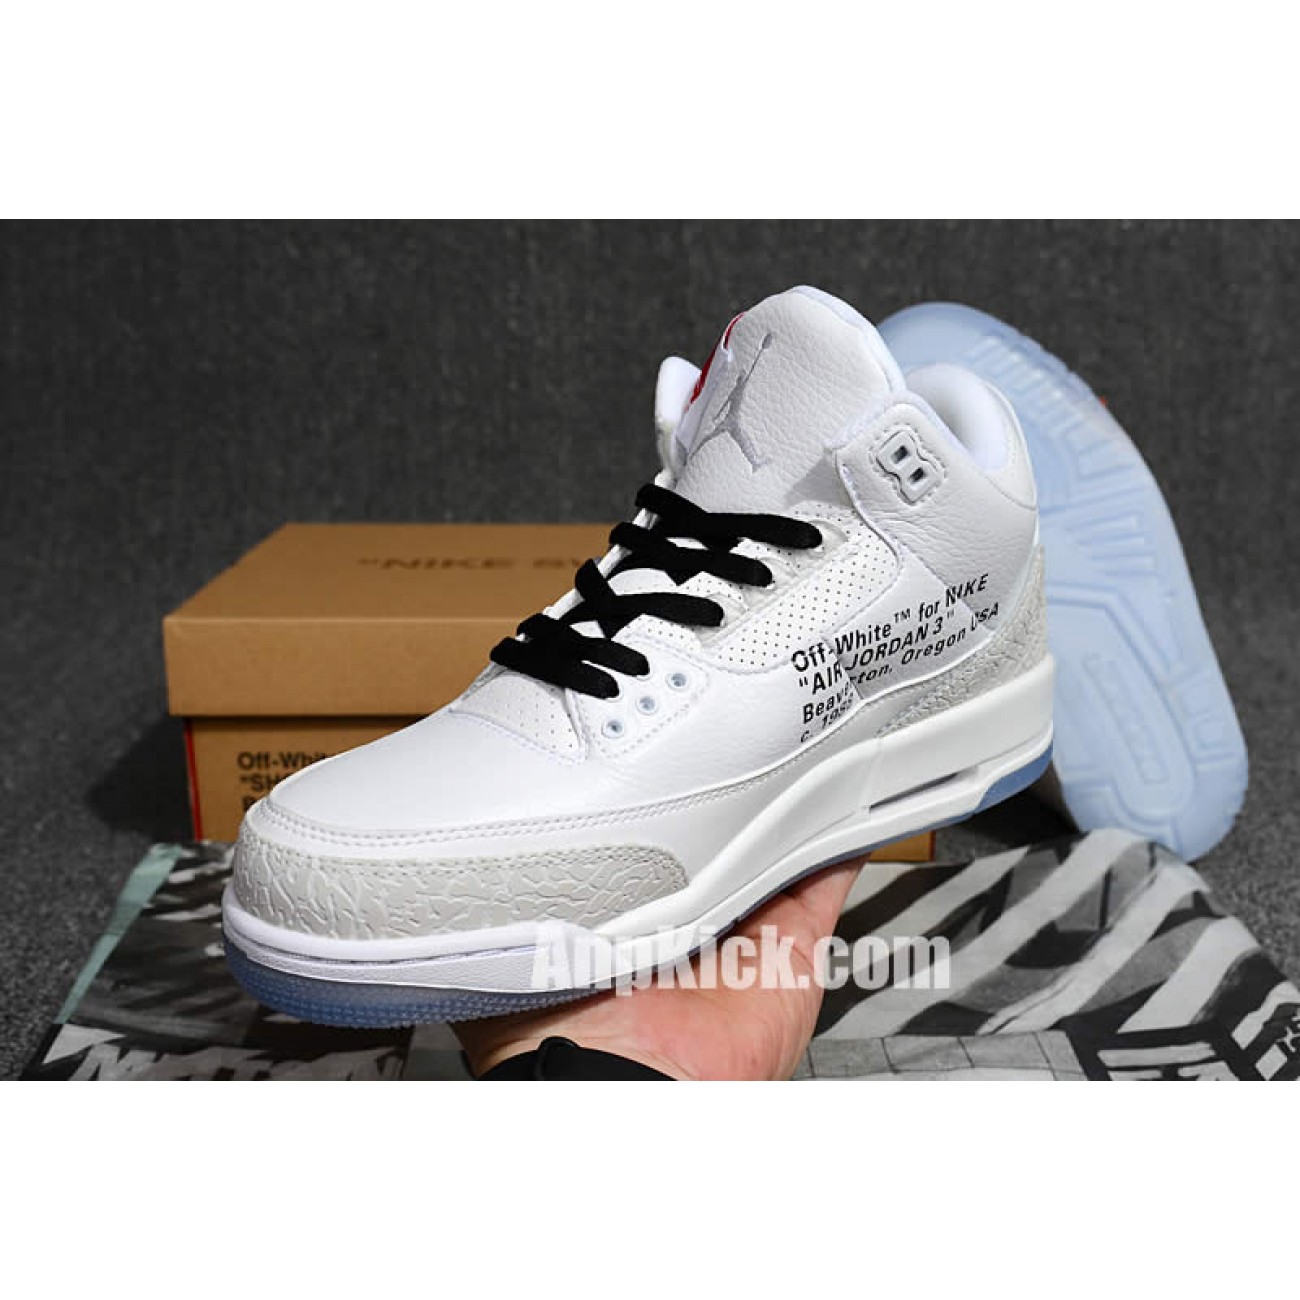 Off-White x Air Jordan 3 OG Retro 3s White Cement Custom Jordans Sneakers